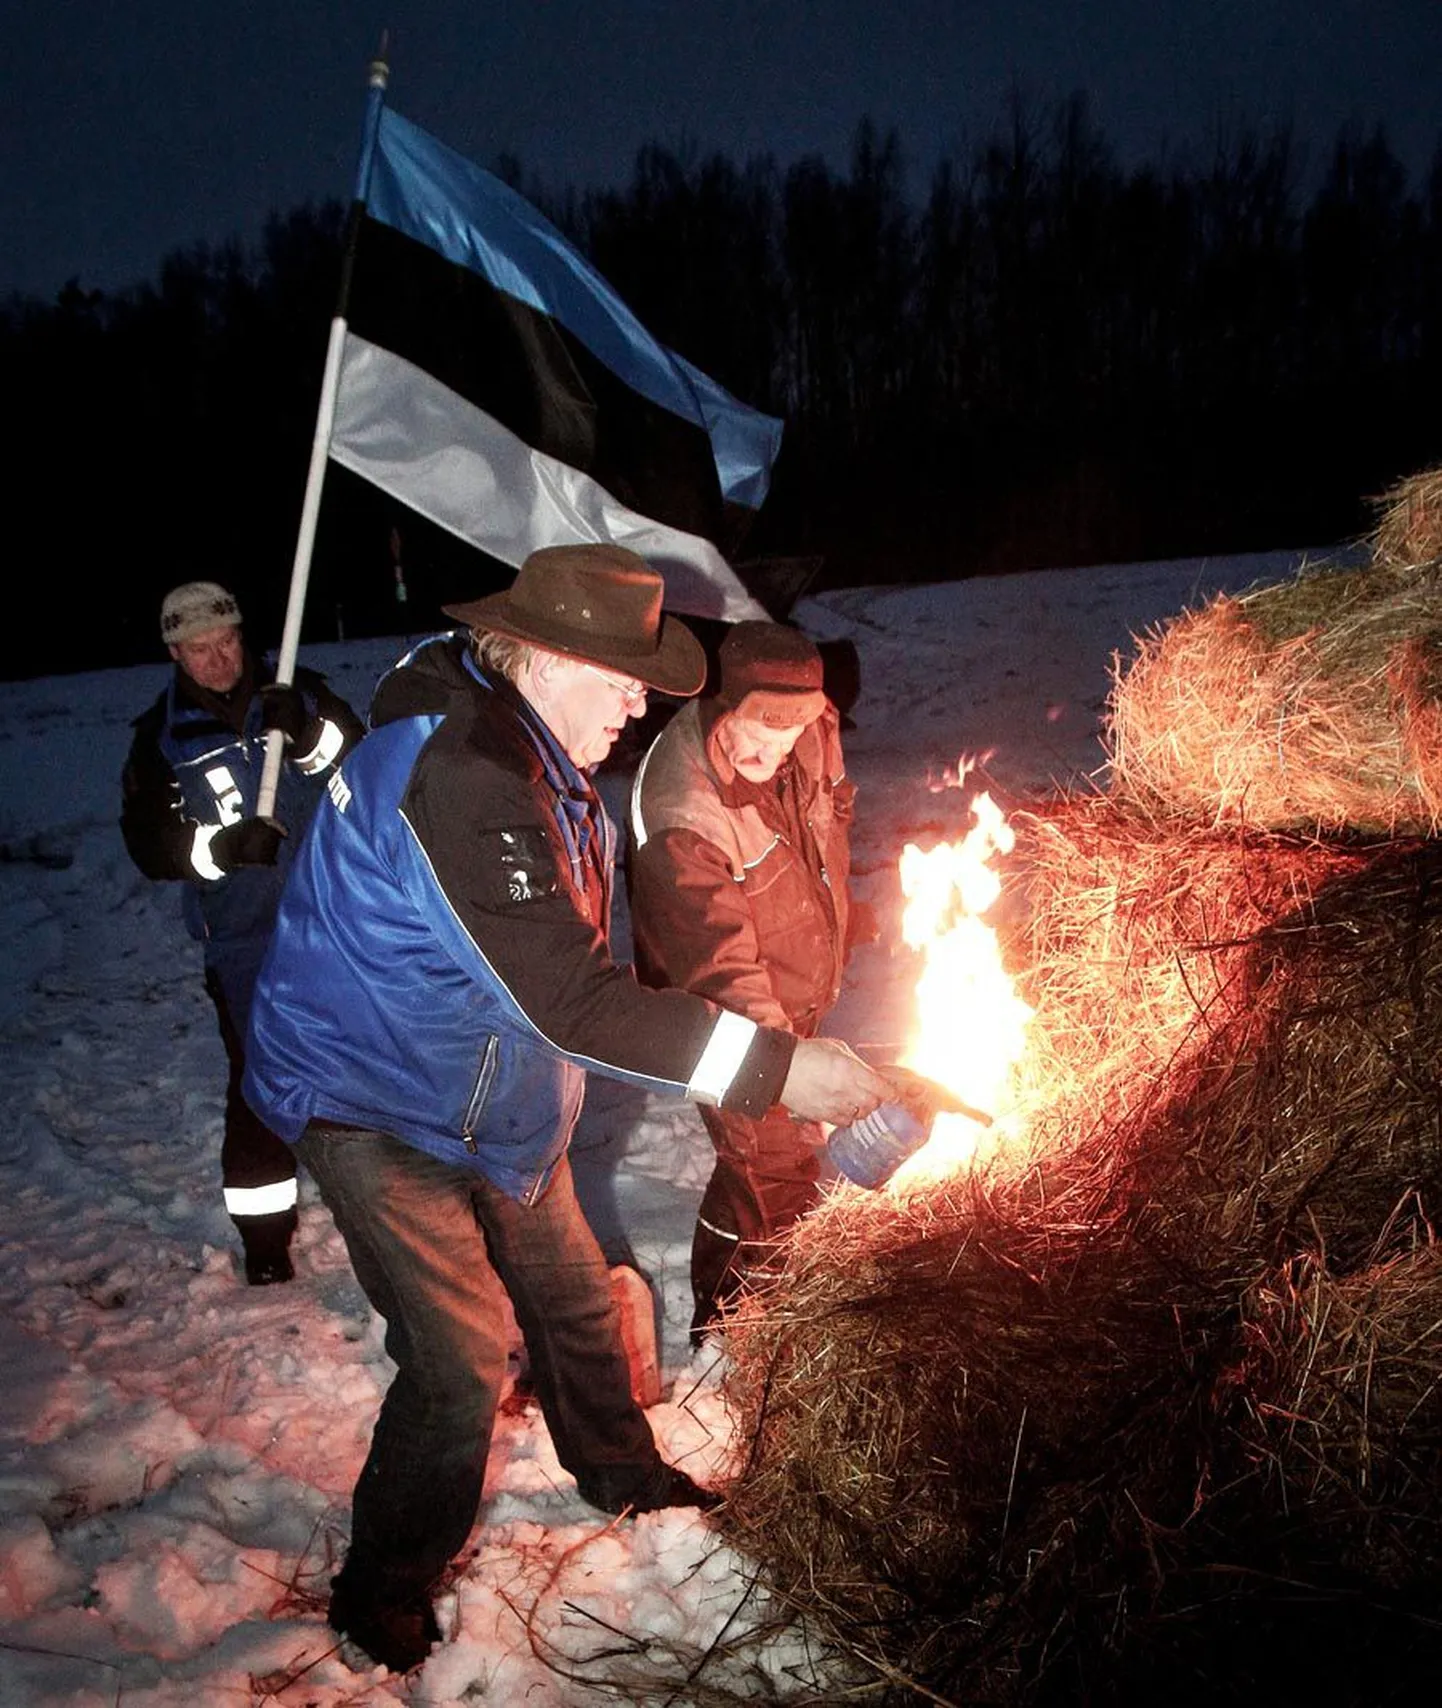 Pärnumaal Ikla piiripunktis anti tuli üle Läti põllumeestele ja süüdati ühine lõke, mille süütajateks OÜ Saidafarm juhataja Juhan Särgava ja Lapite talu sulane Viktor Erismaa.